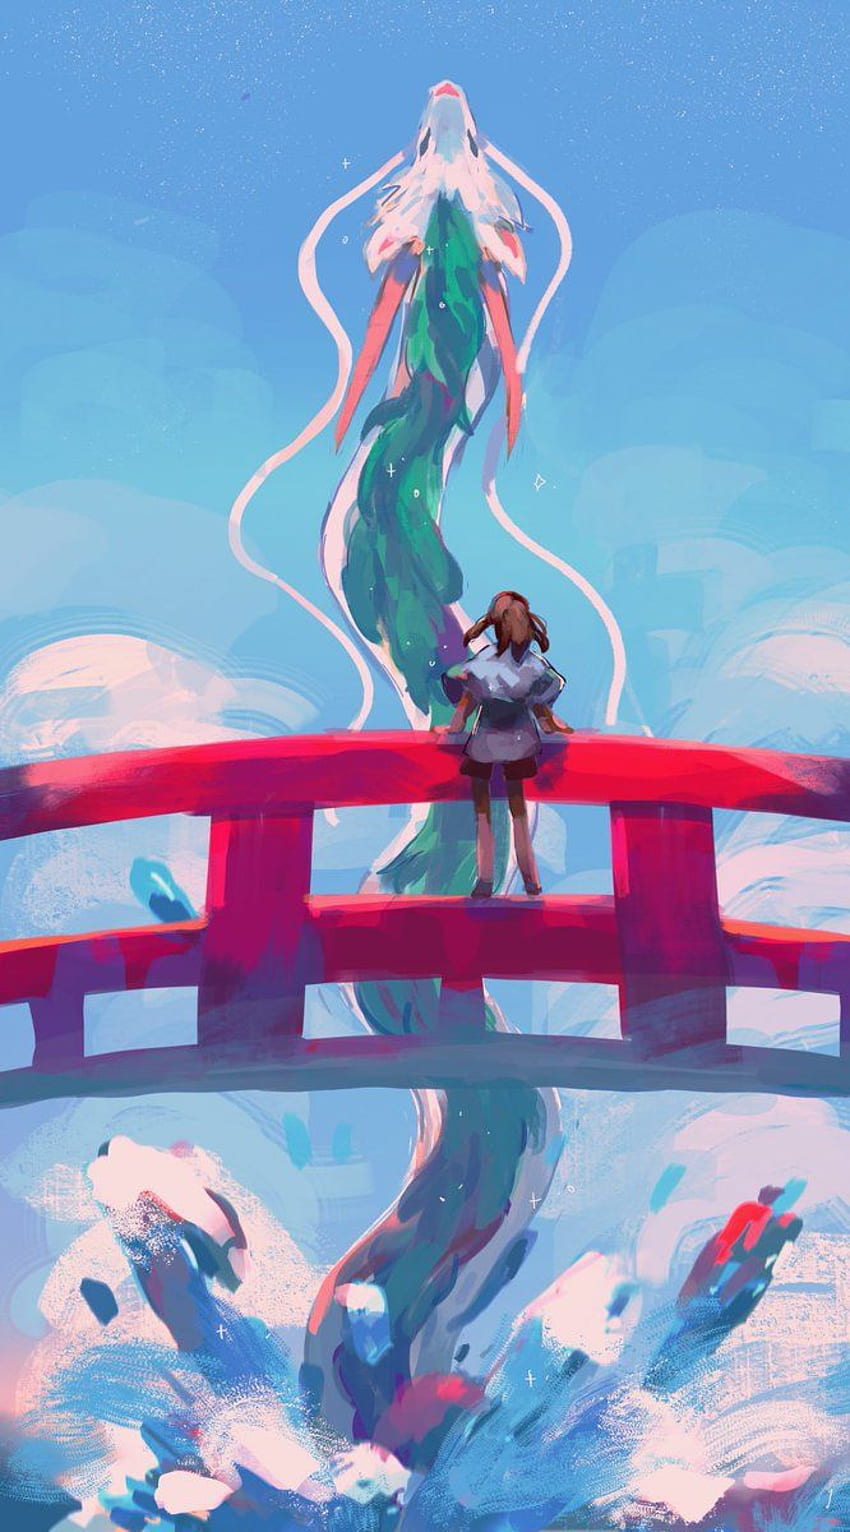 ᅠ ᅠᅠ on Twitter  Studio ghibli art, Ghibli artwork, Studio